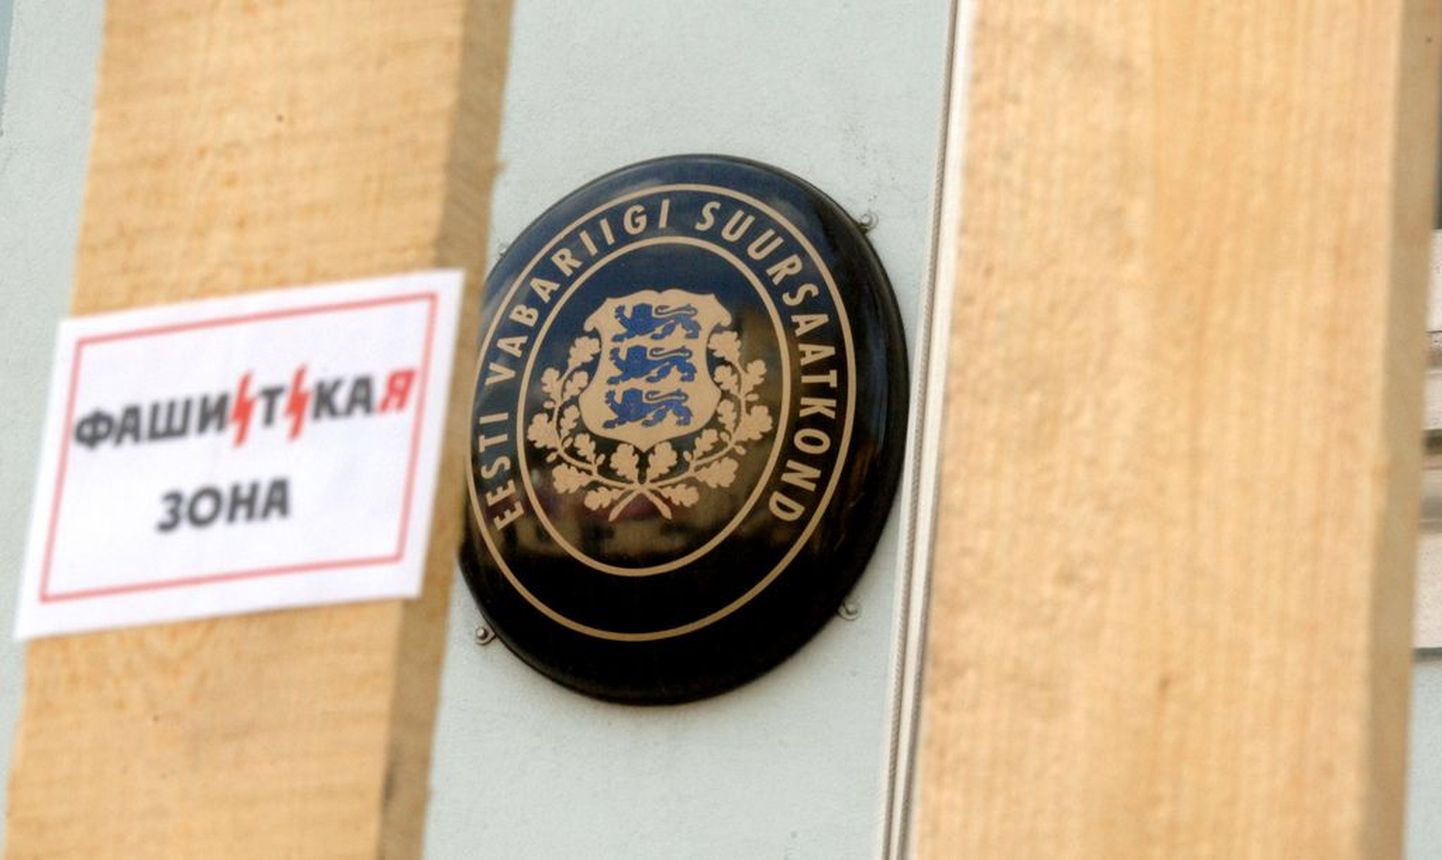 Eesti saatkond Moskvas.